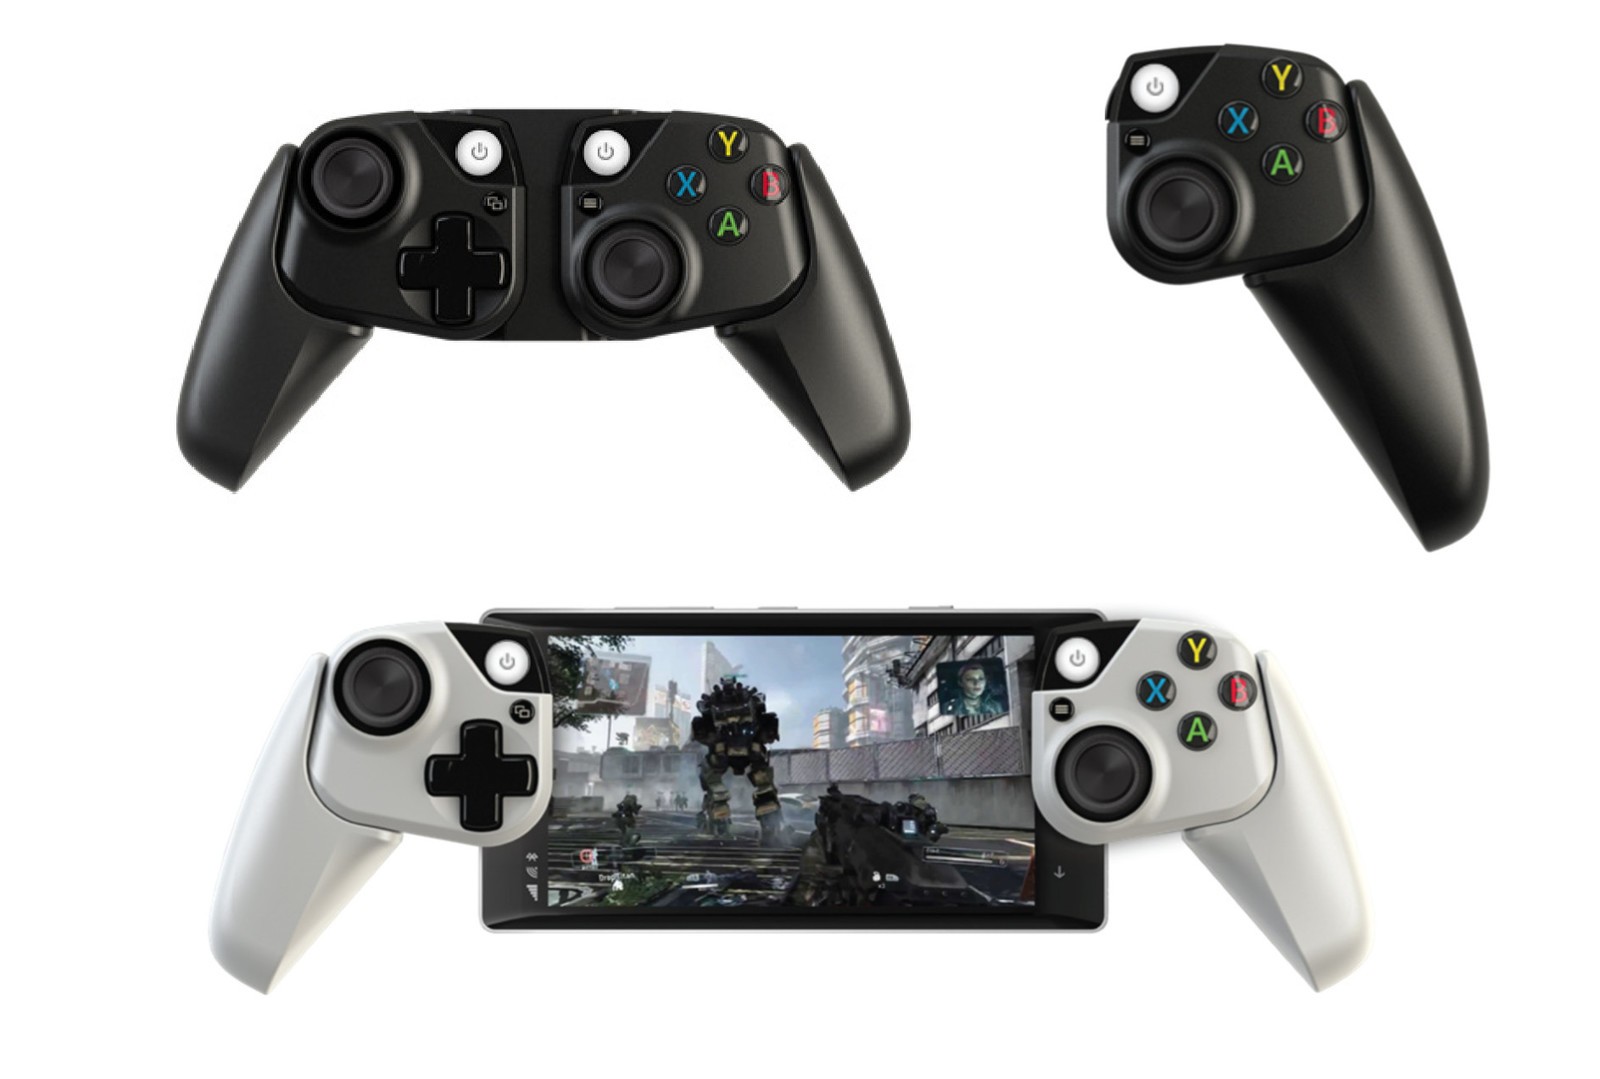 A Microsoft Research felfedte az Xbox vezérlő koncepcióját okostelefonokhoz és táblagépekhez